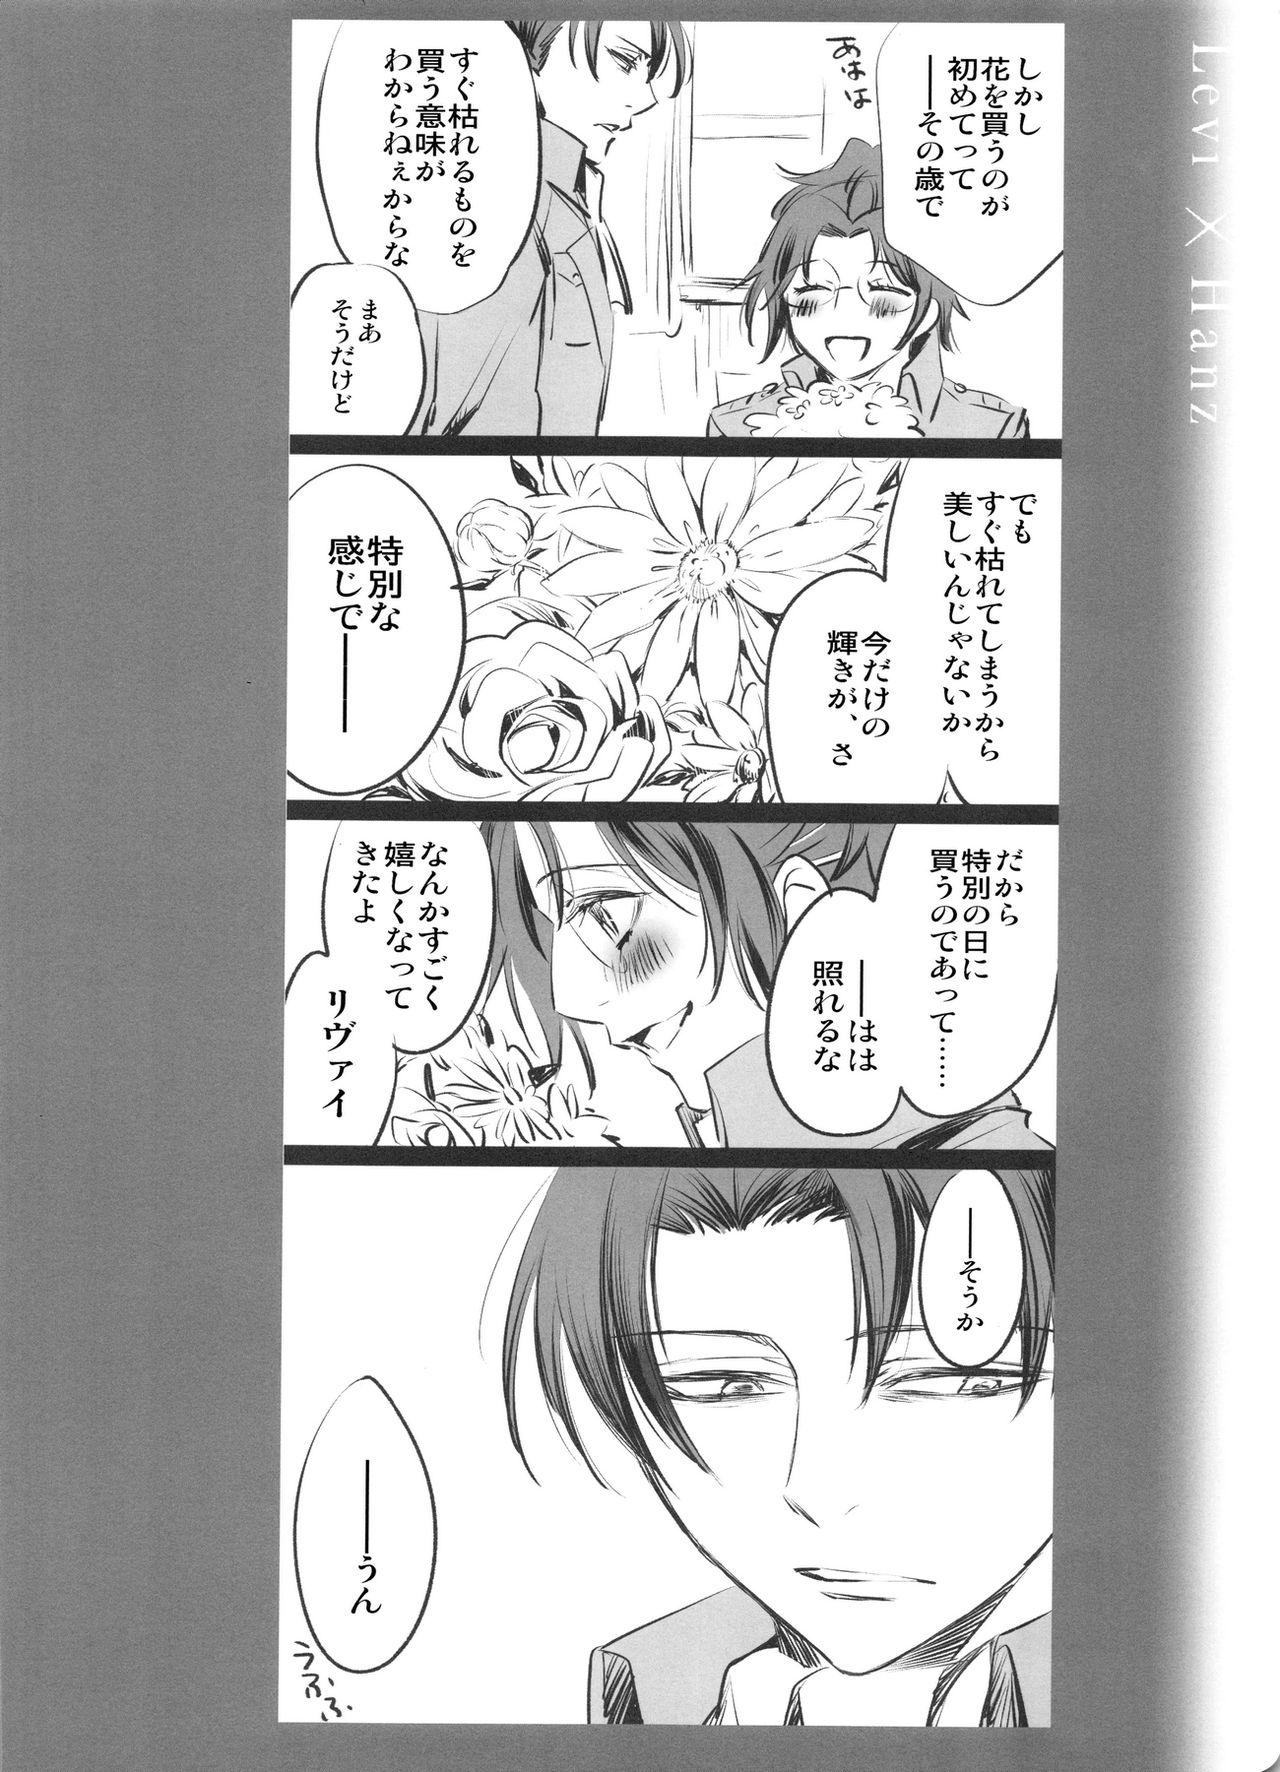 Skinny 0905 - Shingeki no kyojin Freaky - Page 10